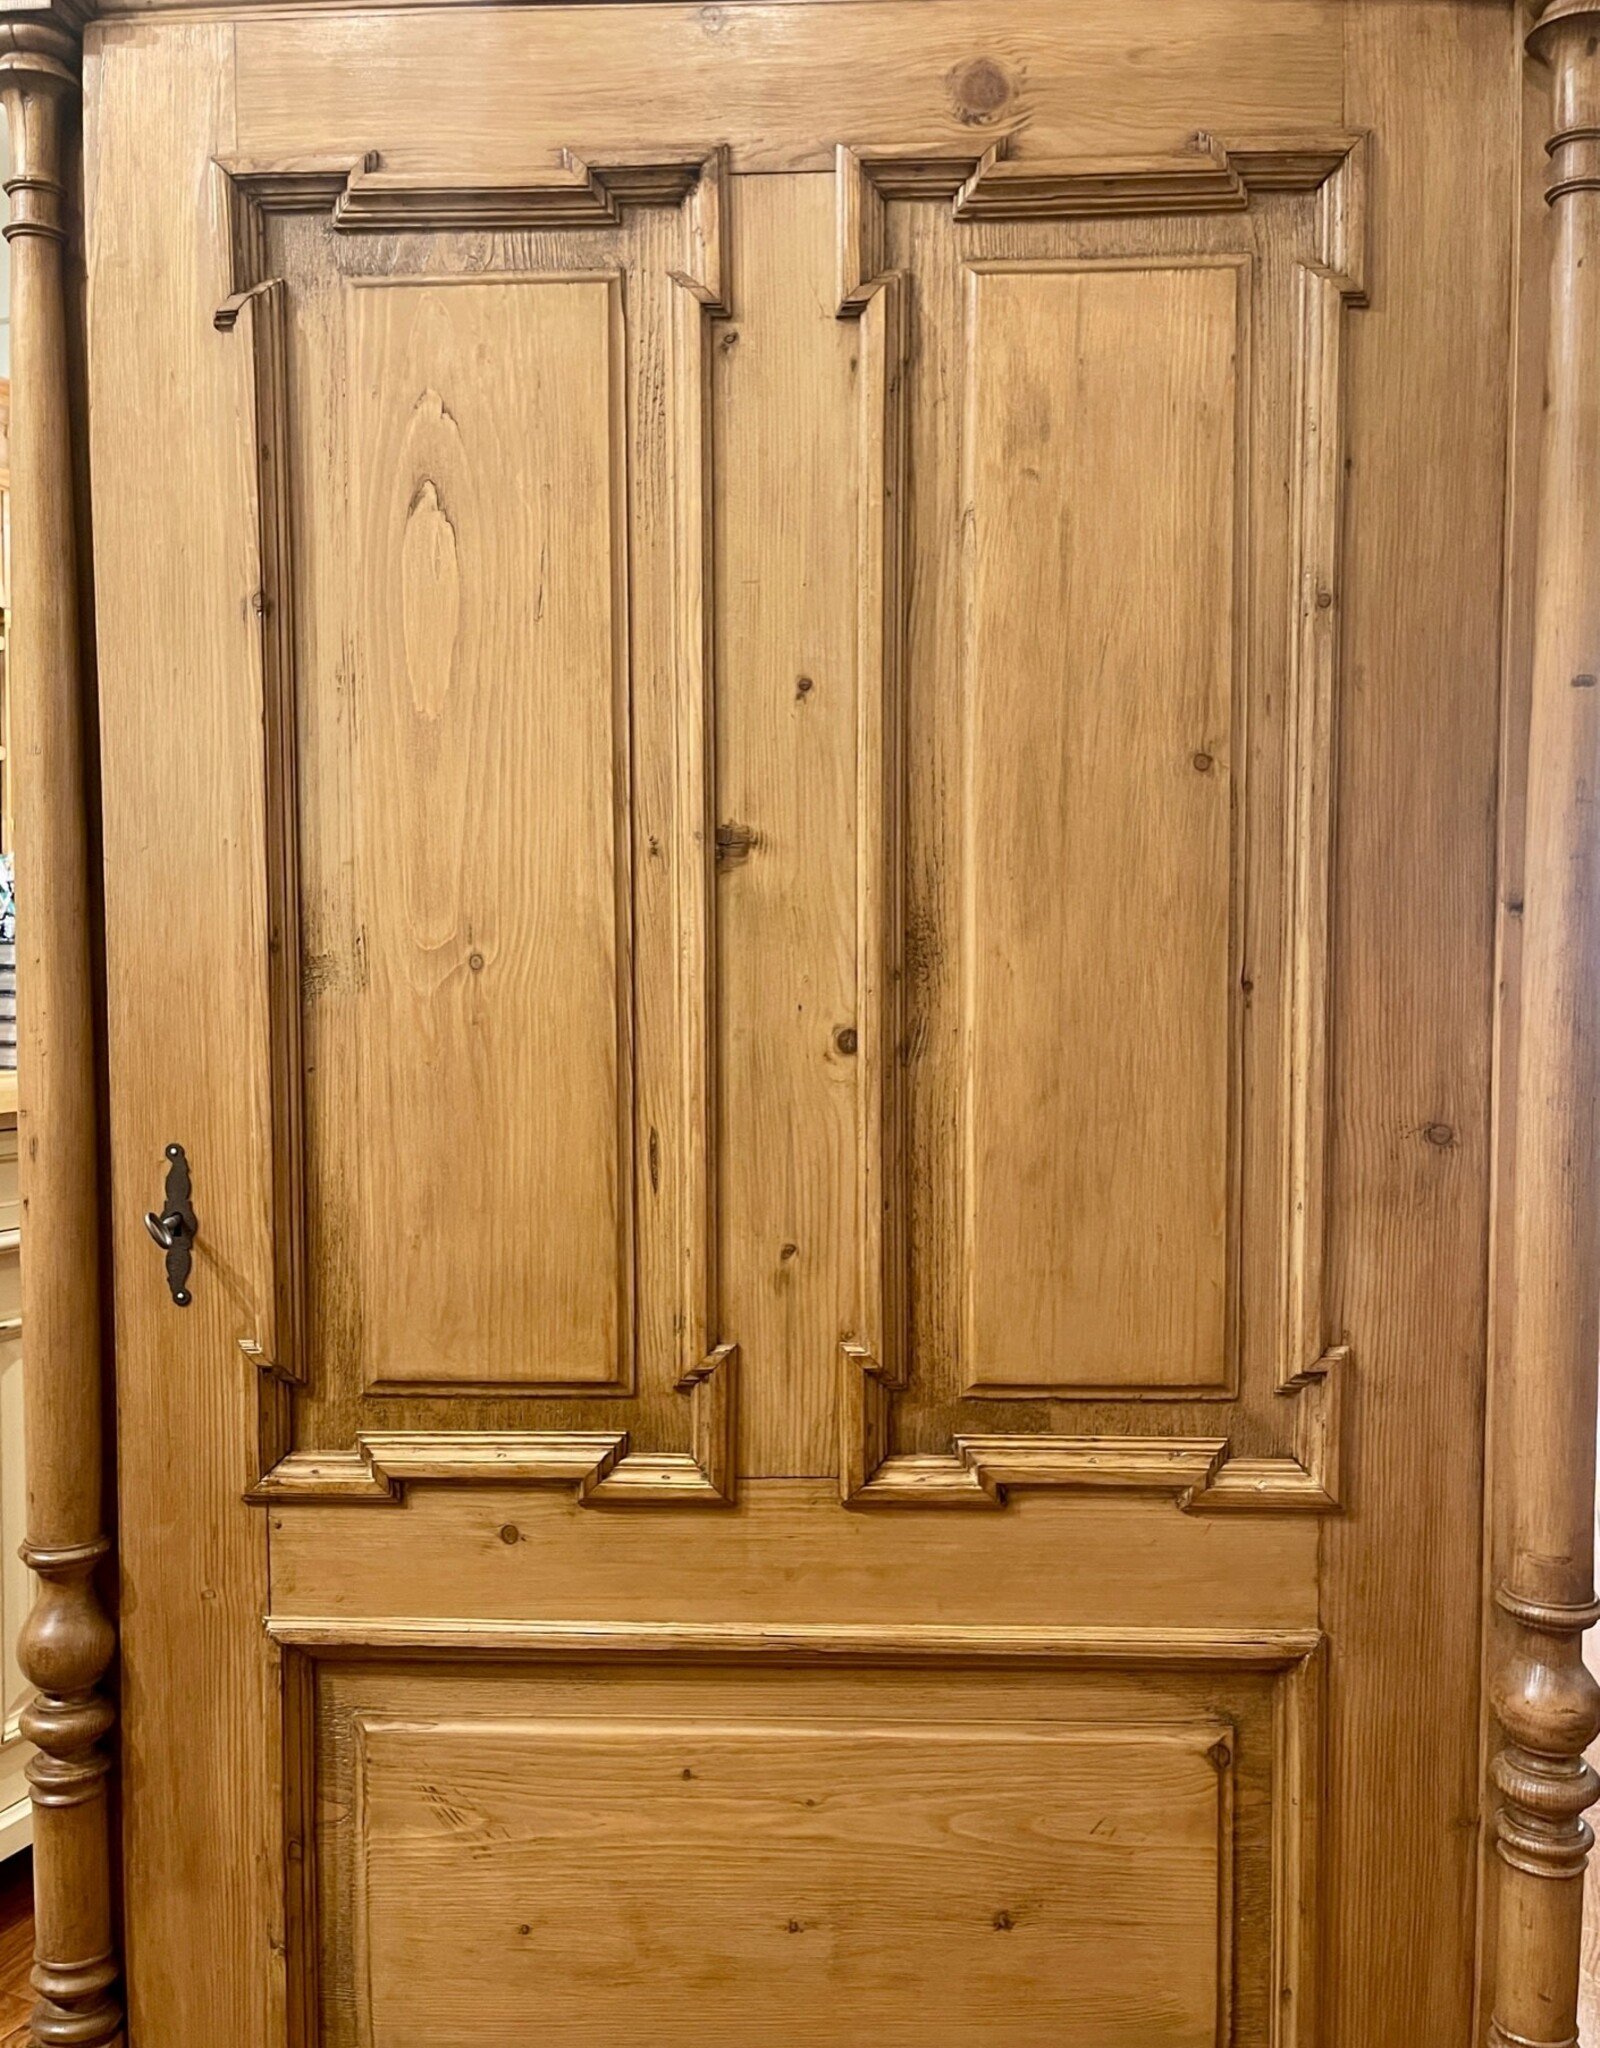 Armoire - Pine Original - 1 Door With Spindles